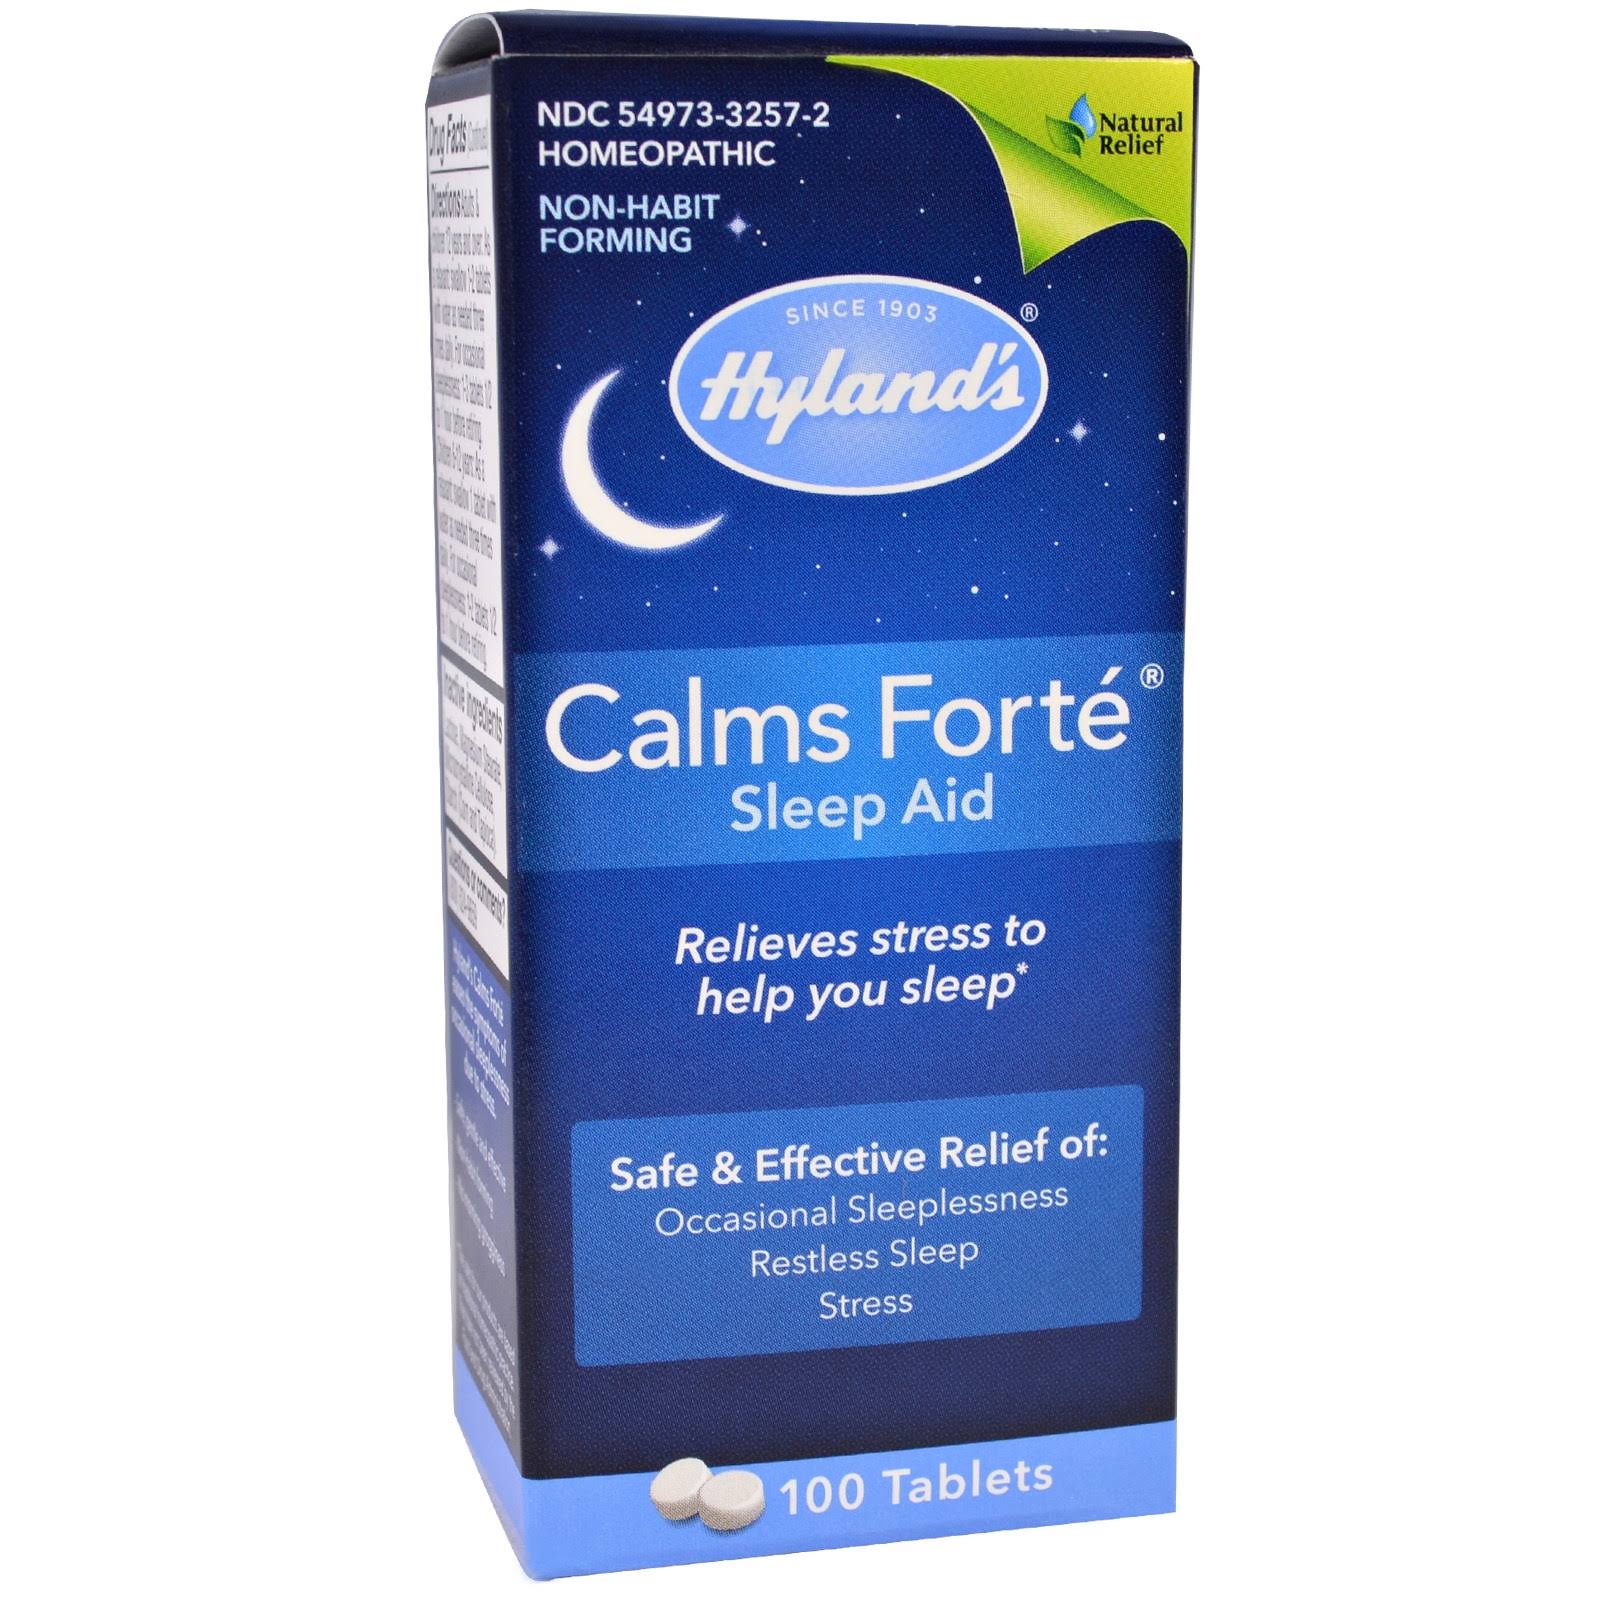 Hyland's Calms Forté Sleep Aid - 100 Tablets